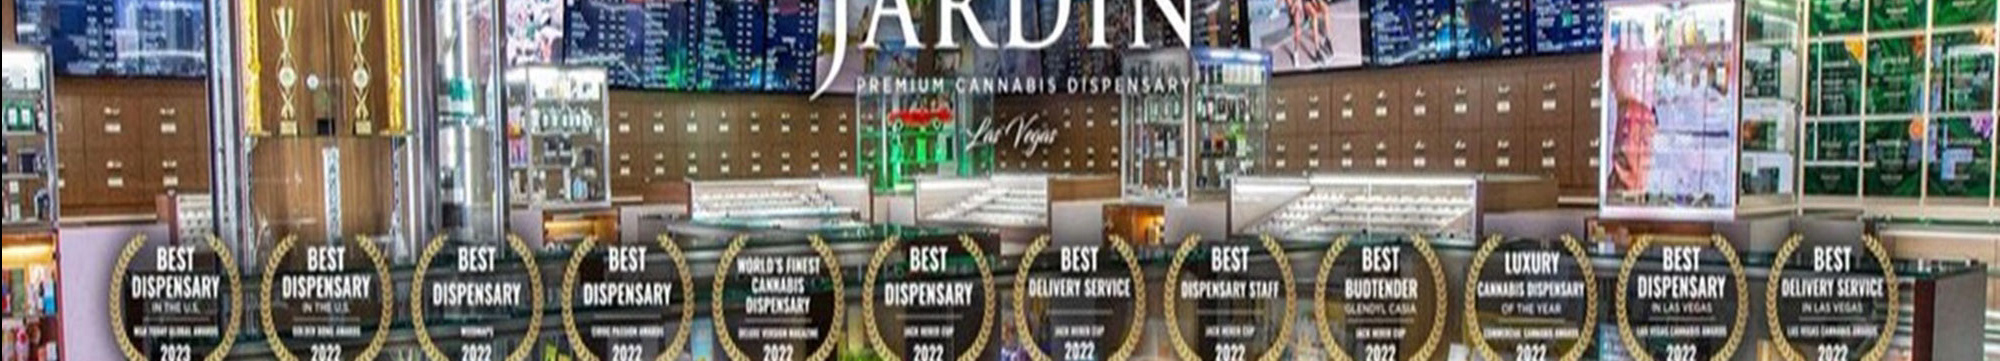 Profil-Banner von Jardin Las Vegas